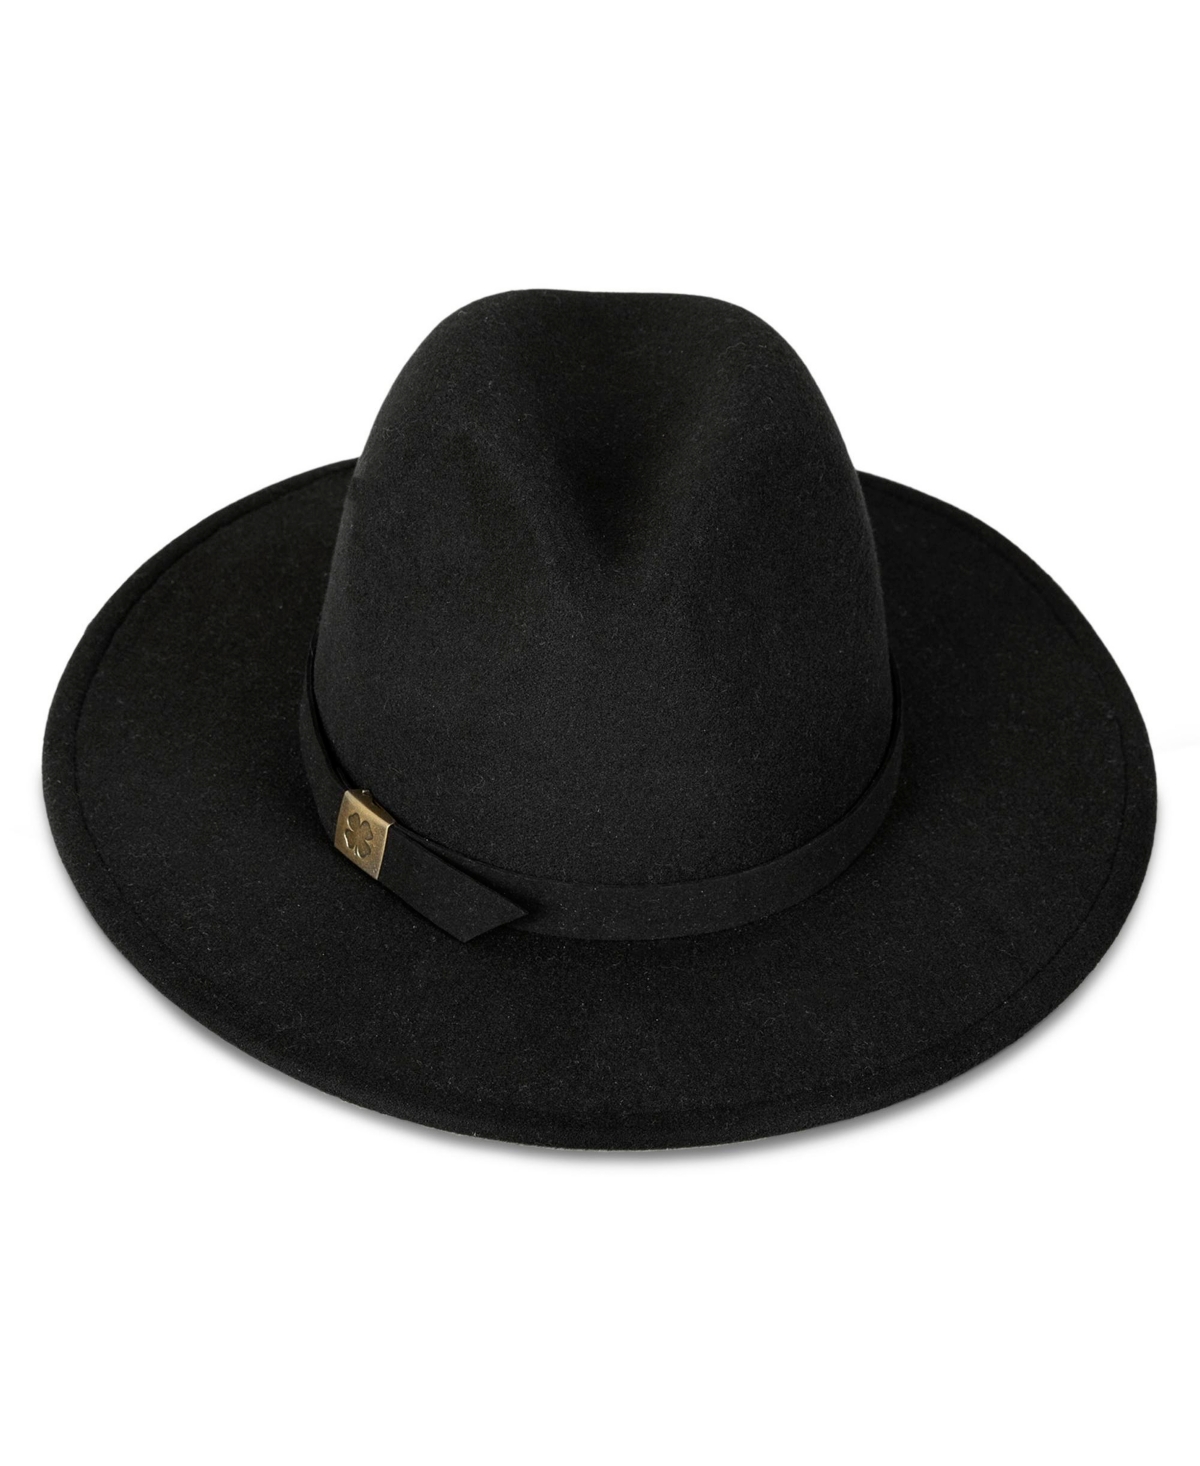 Women's Felt Ranger Hat - Black